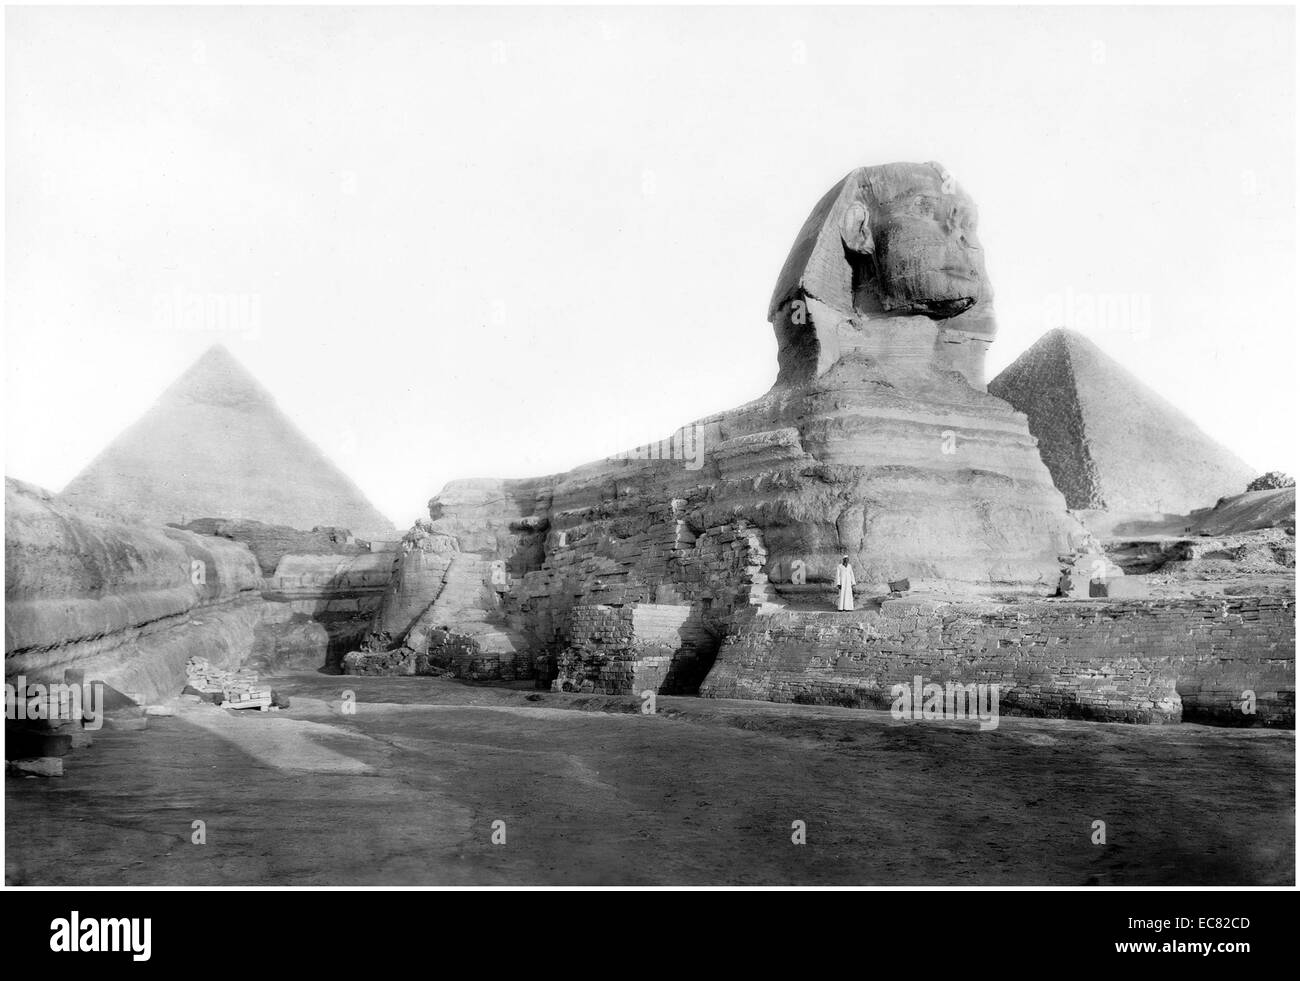 Bild von der Sphinx und die Pyramiden von Ägypten. Das Bild wurde ca. 1934 aufgenommen. Stockfoto